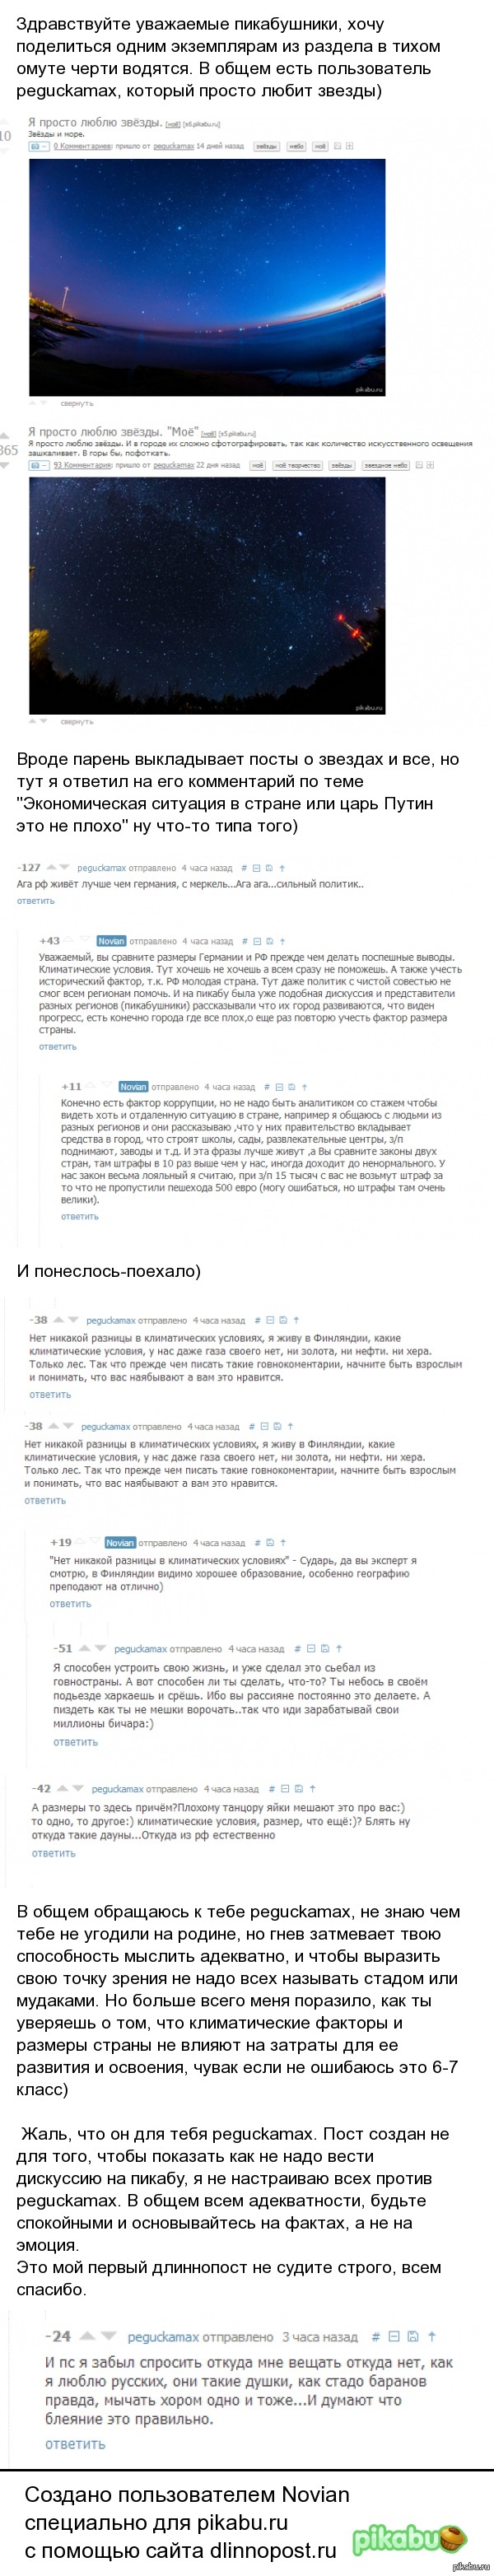  )   : <a href="http://pikabu.ru/story/putin_zhzhet_v_peterburge_2304425#comments">http://pikabu.ru/story/_2304425</a>